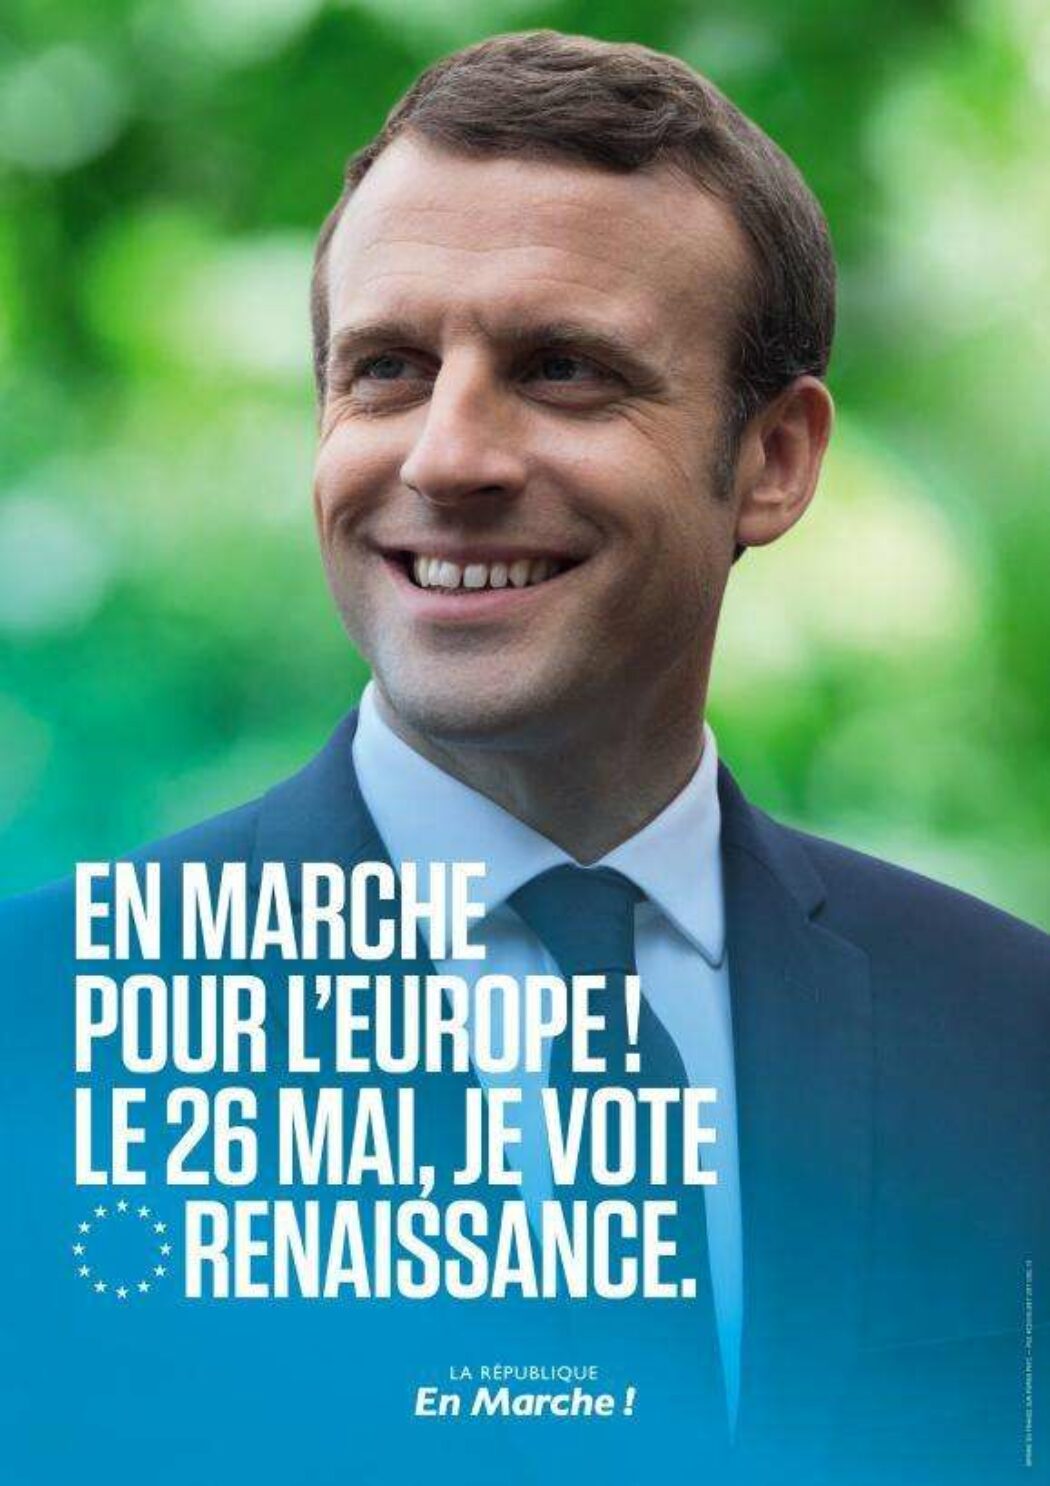 Macron n’a fait qu’aligner la gauche française à la social-démocratie européenne